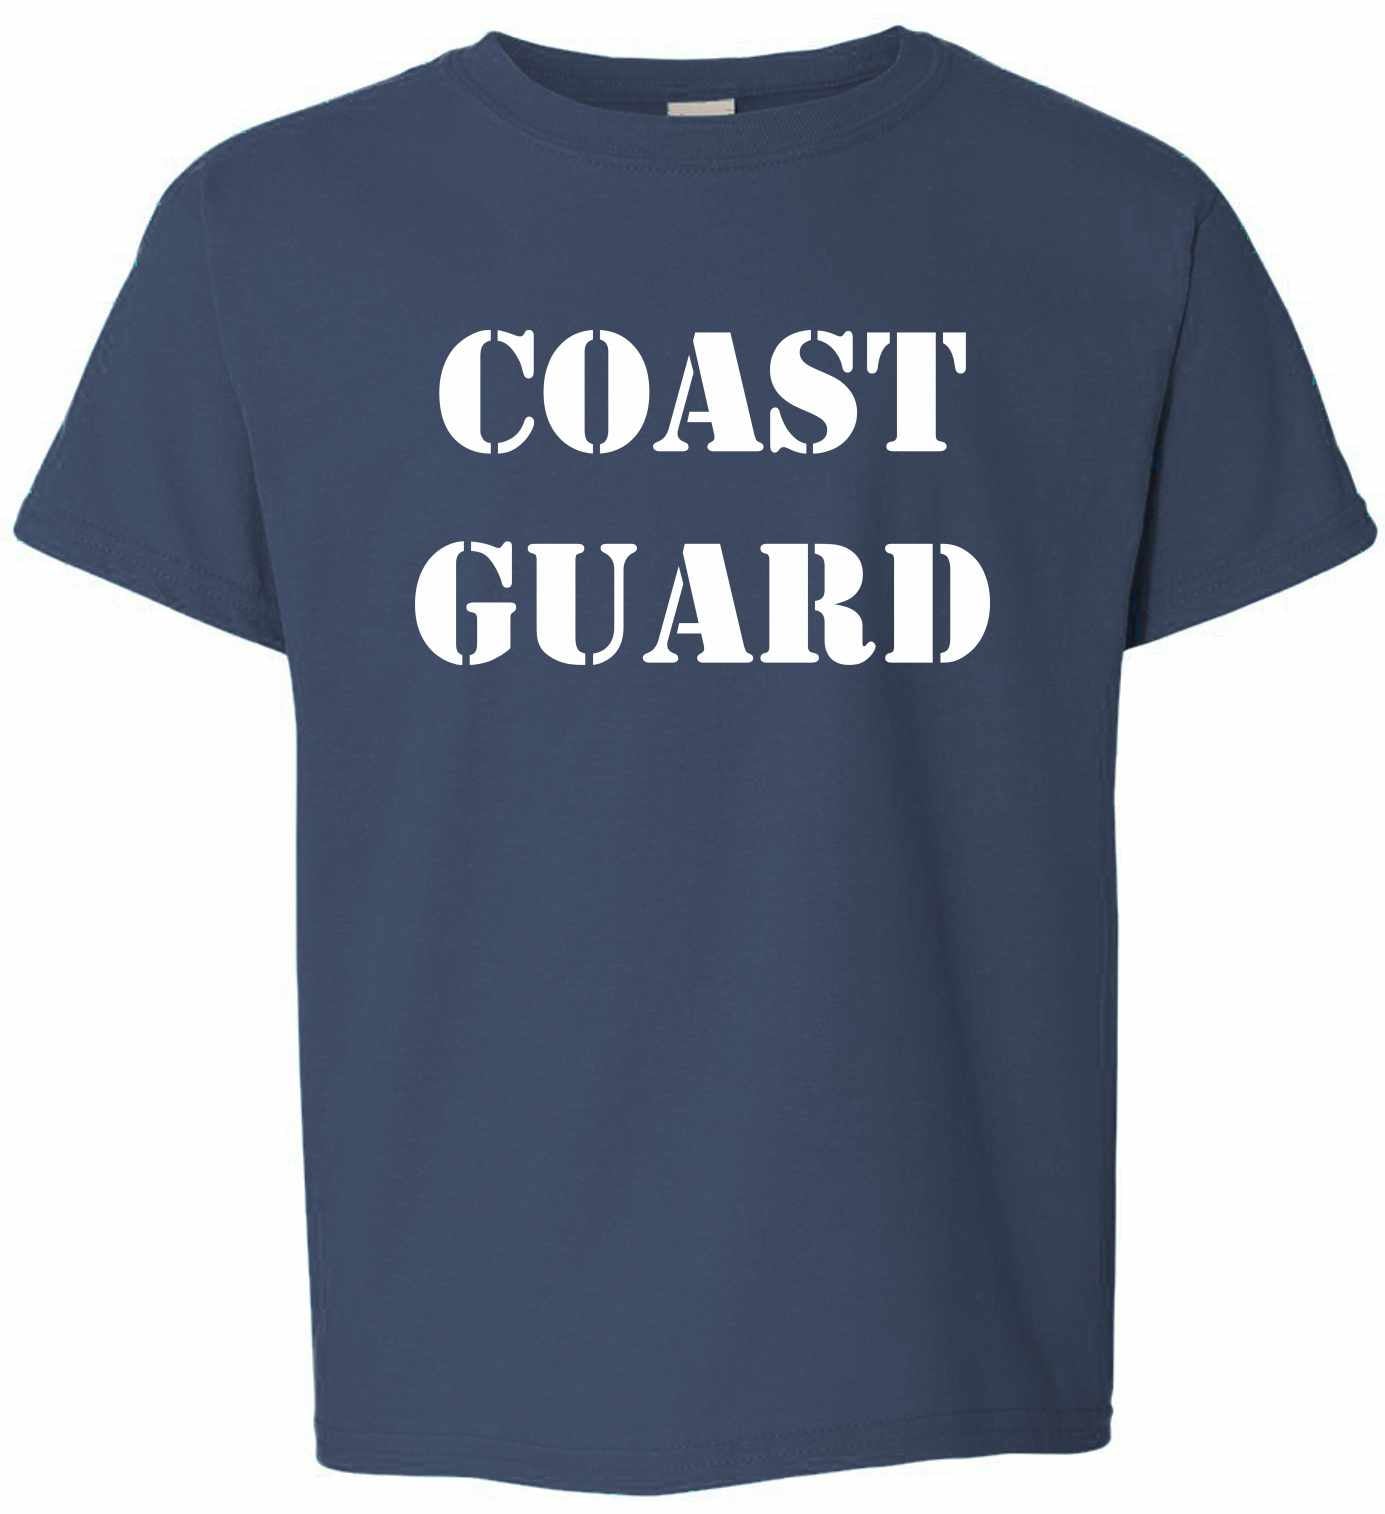 COAST GUARD on Kids T-Shirt (#340-201)